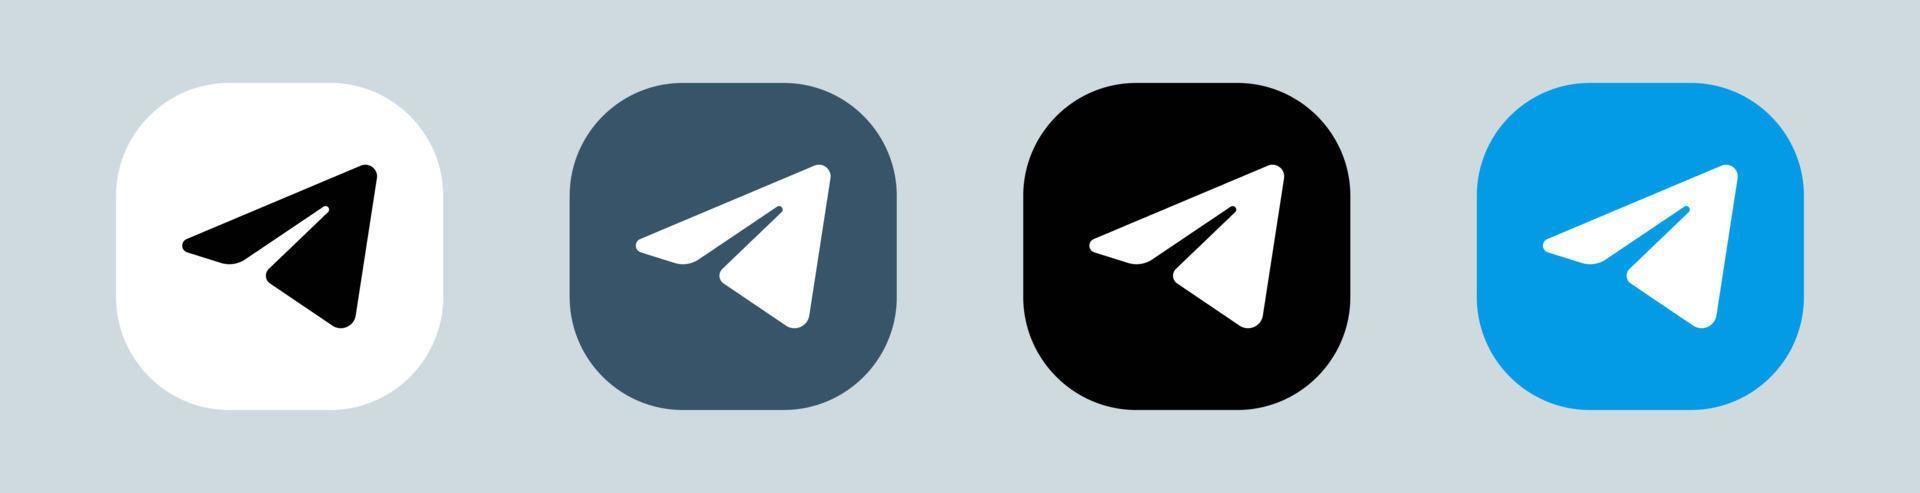 Telegram logo in square. Popular messaging app logotype vector illustration.